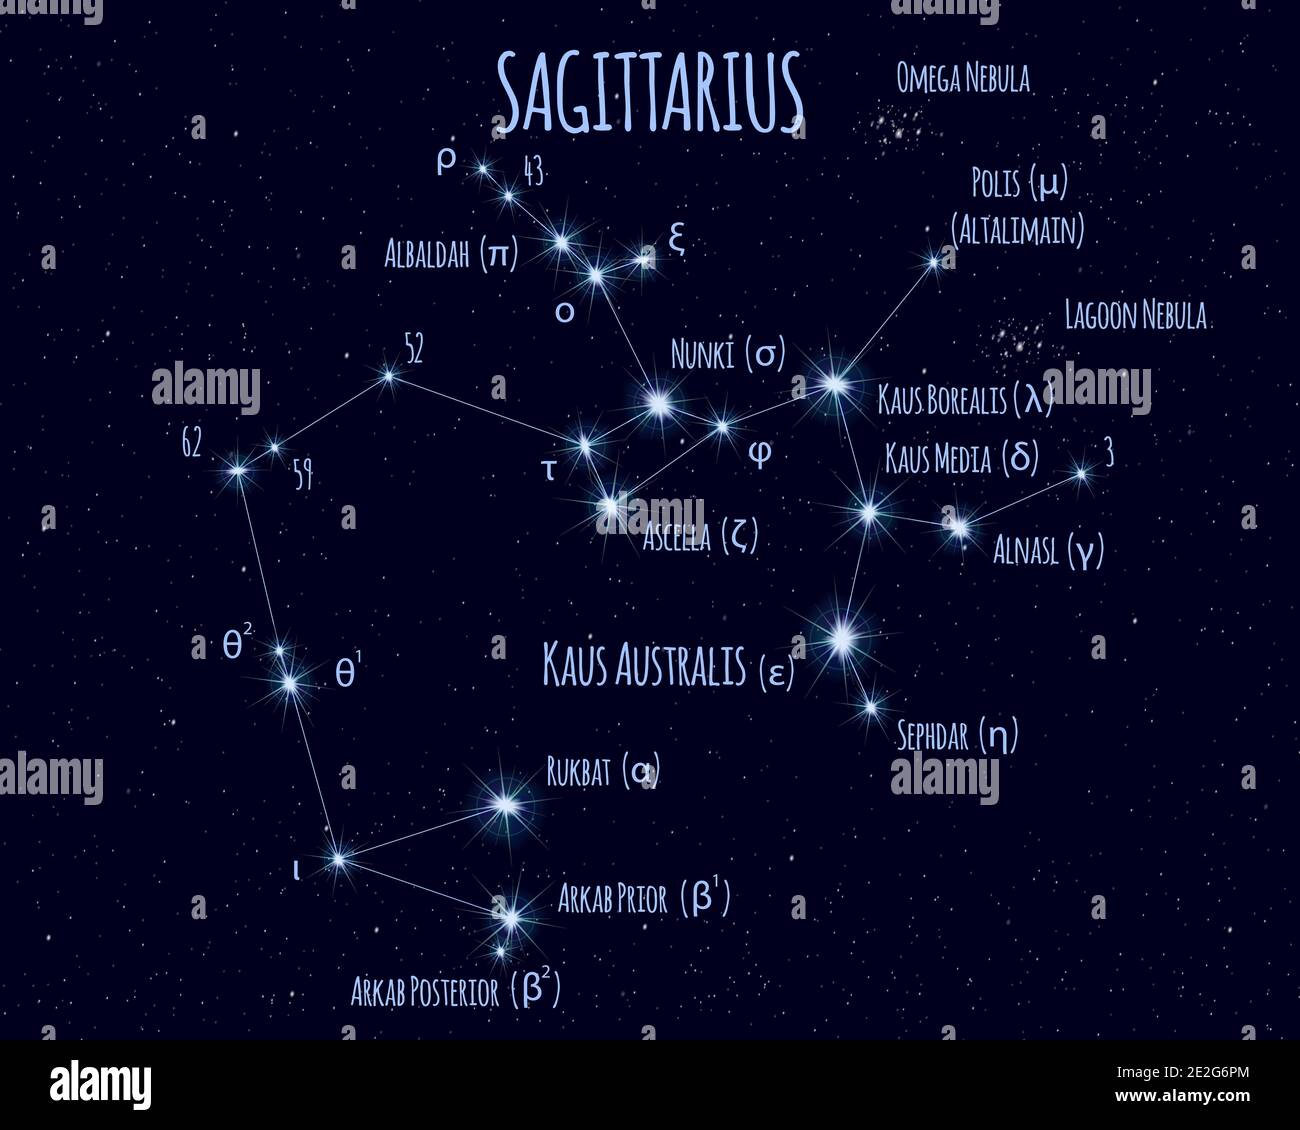 Sagittarius Constellation Wikipedia